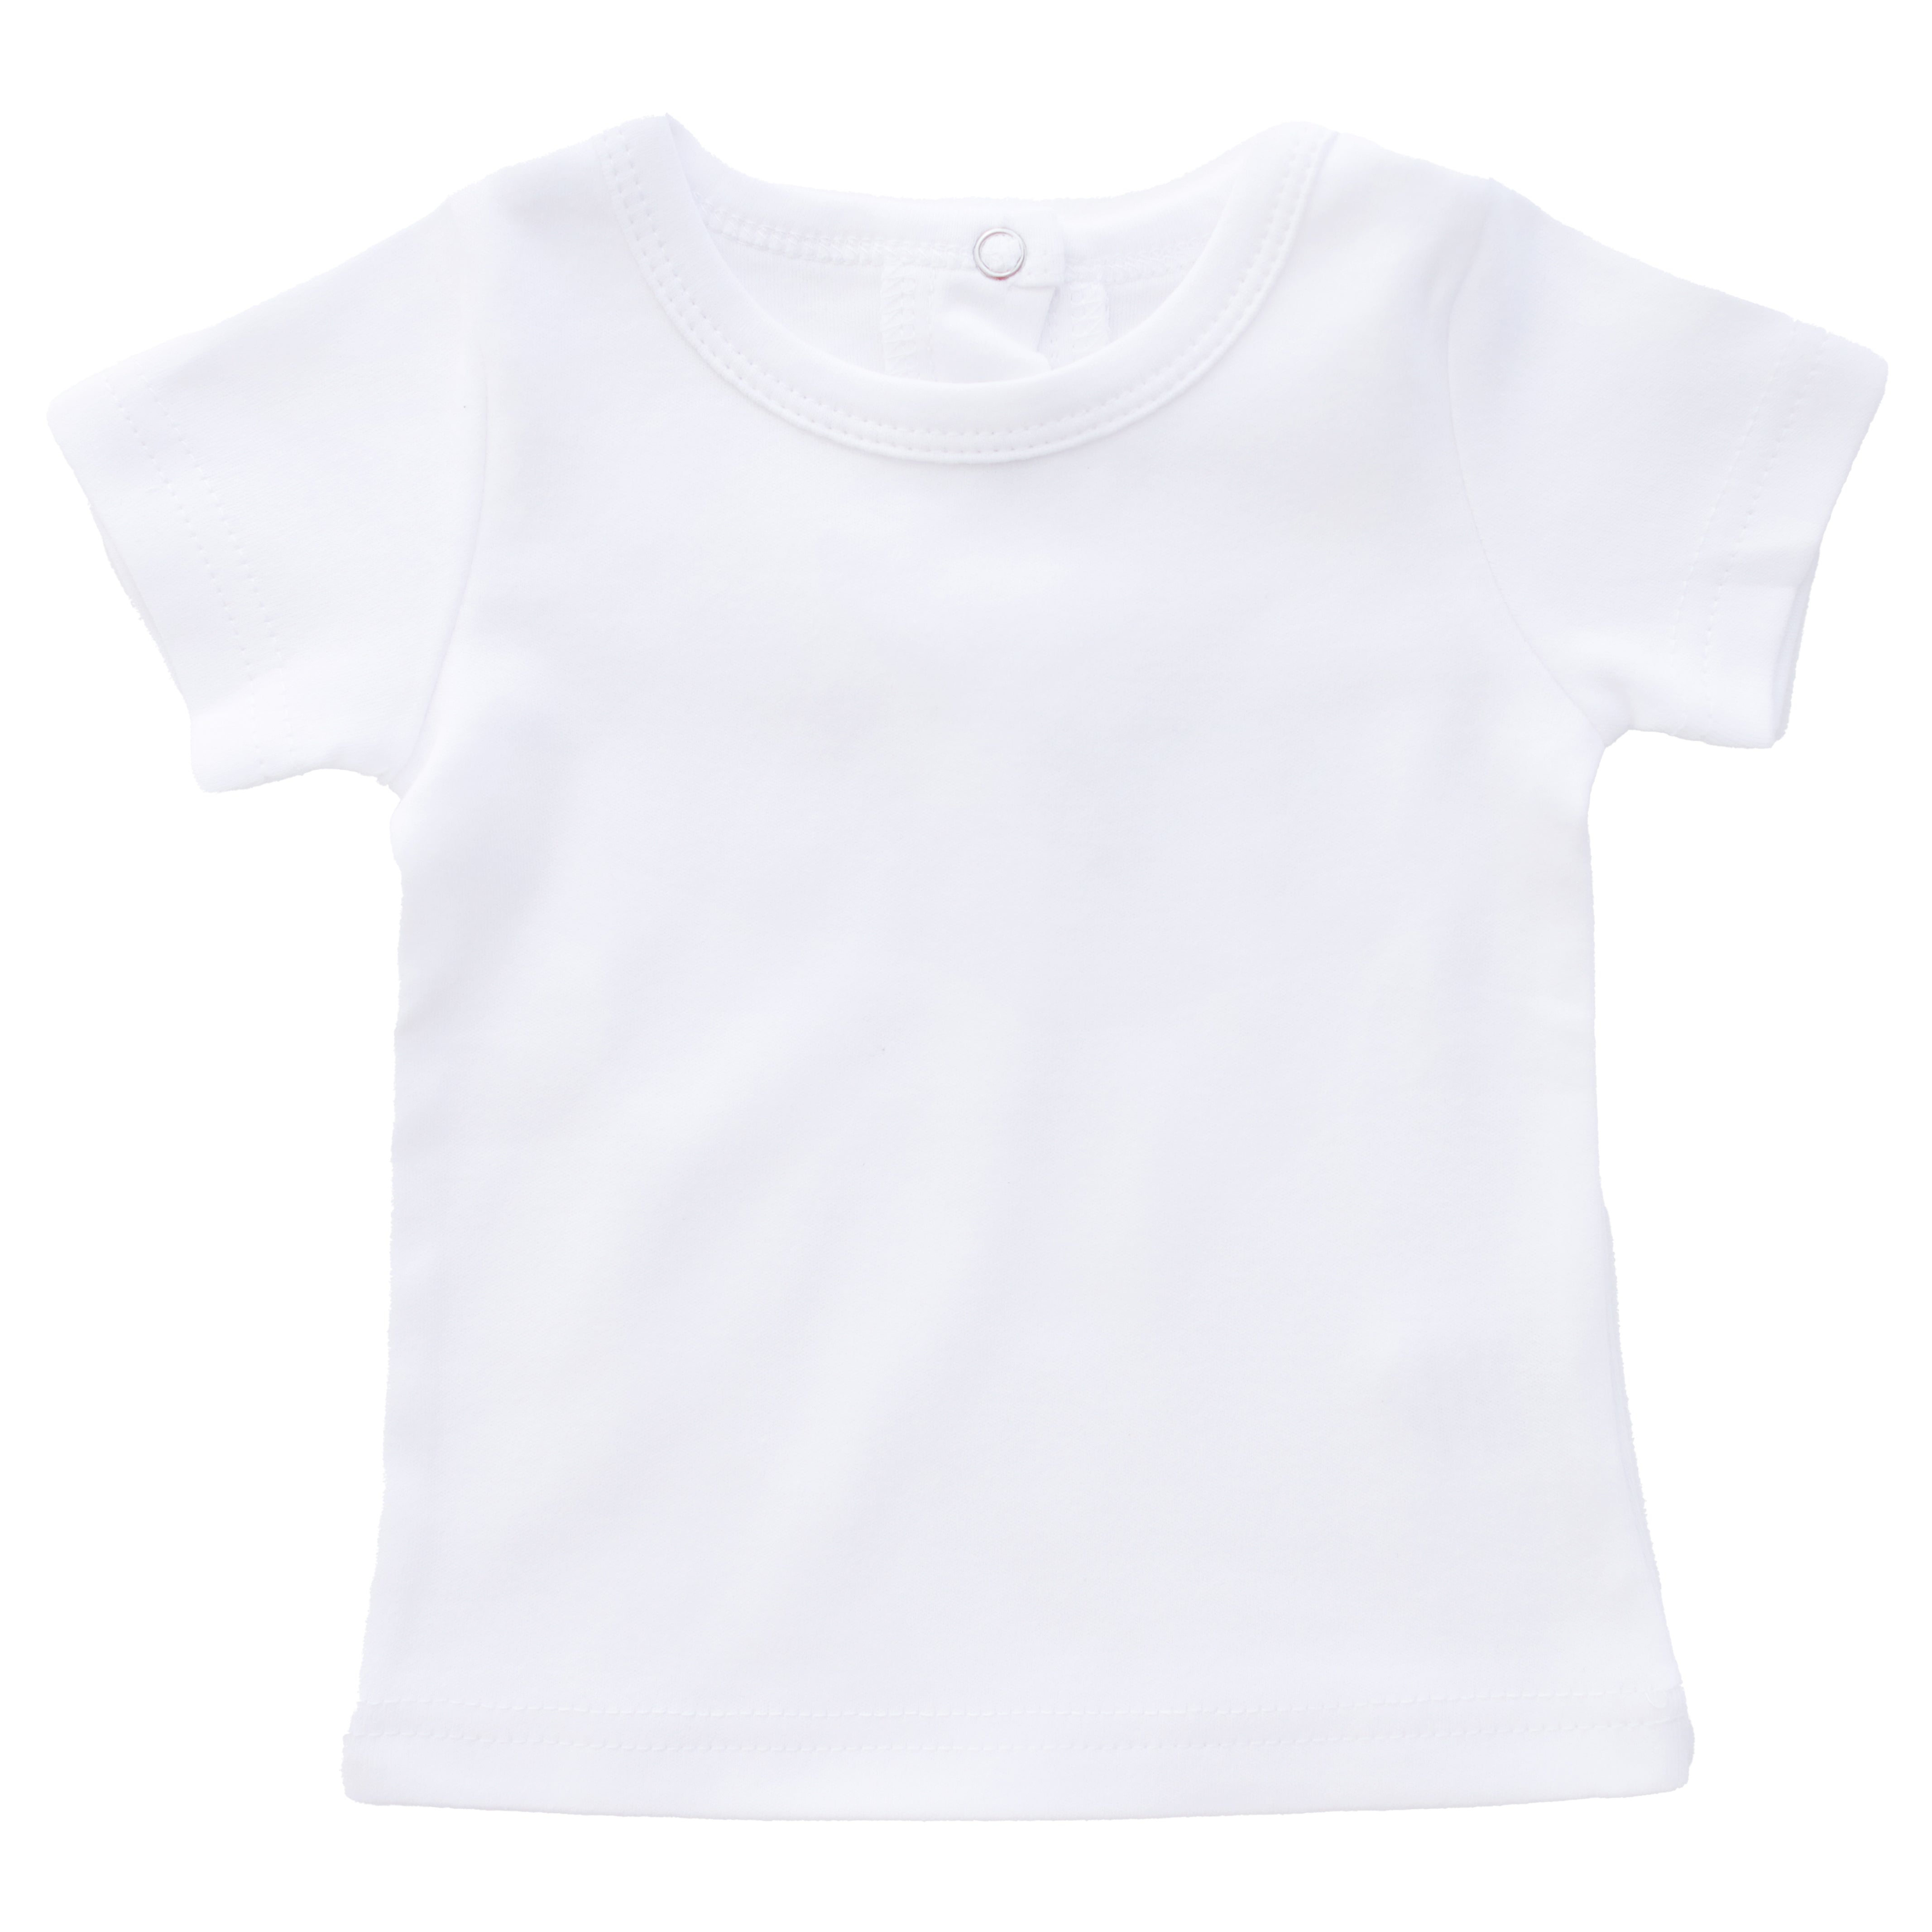 T-shirt-white